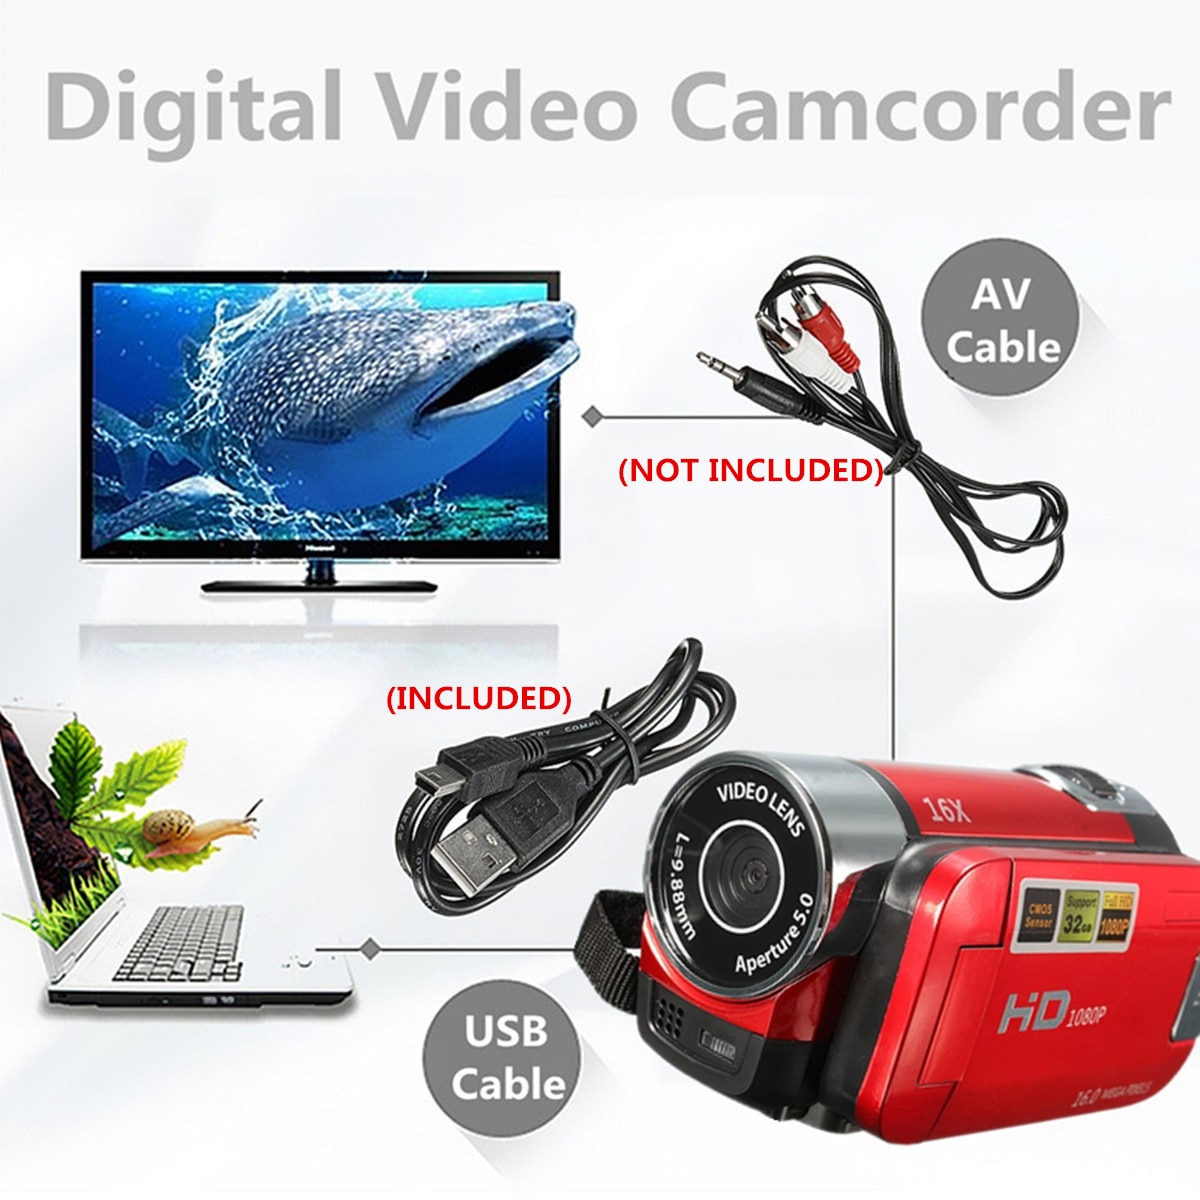 มุมมองเพิ่มเติมของสินค้า ดิจิตอลกล้องวิดีโอ กล้องวีดีโอกล้องถ่ายรูป ระบบตัวเลขความละเอียดสูงกล้องถ่ายวิดีโอกล้อง DV 16X Video Camera 16 Million Pixels HD 1080P Digitale Video Camcorder DV 16MP 2.7'' LCD Screen Toccare Schermo 16X Zoom Camera